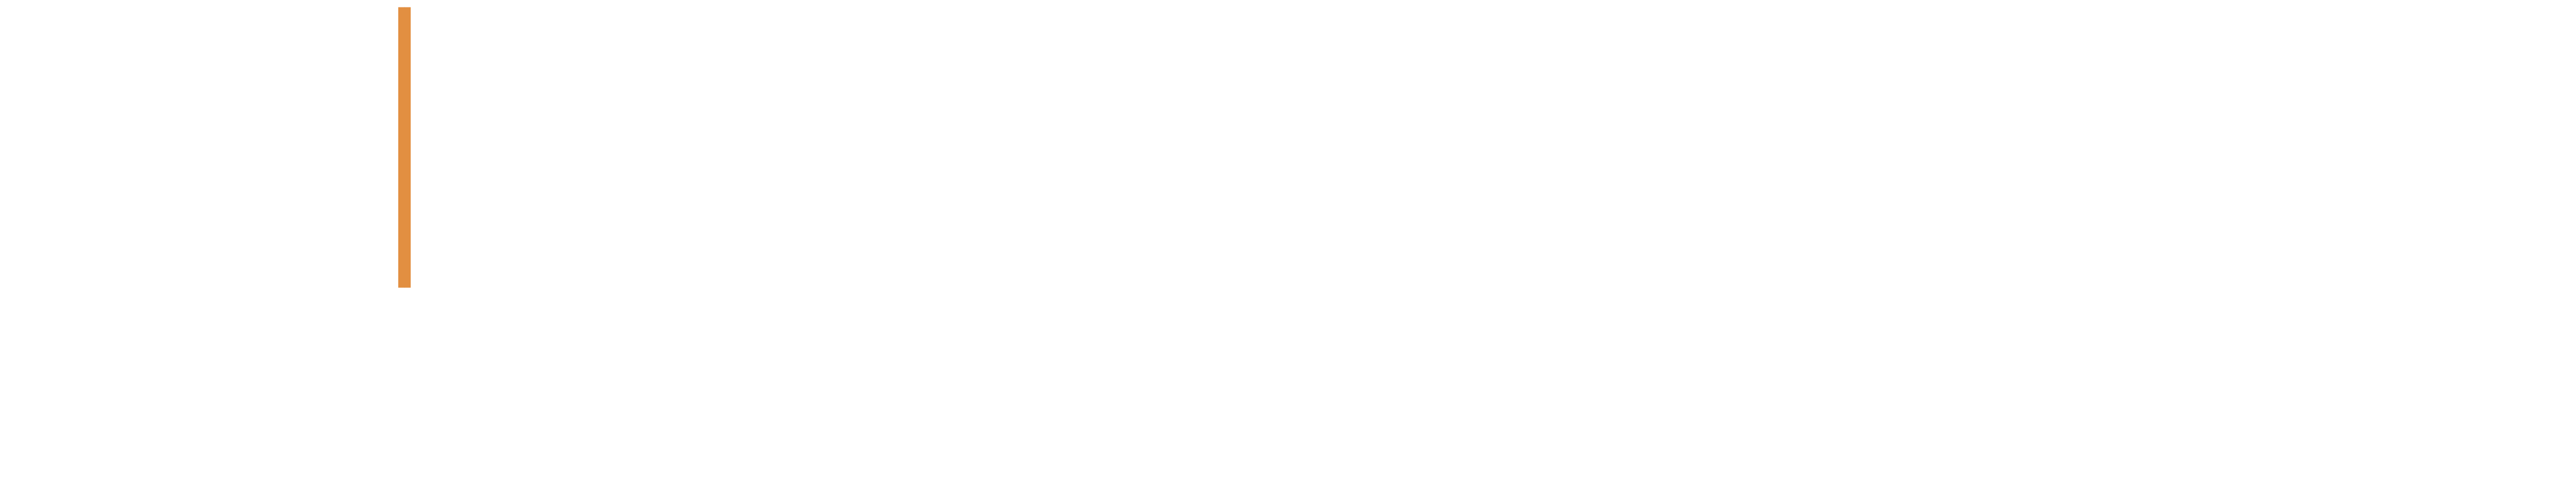 SmartDATA Lab